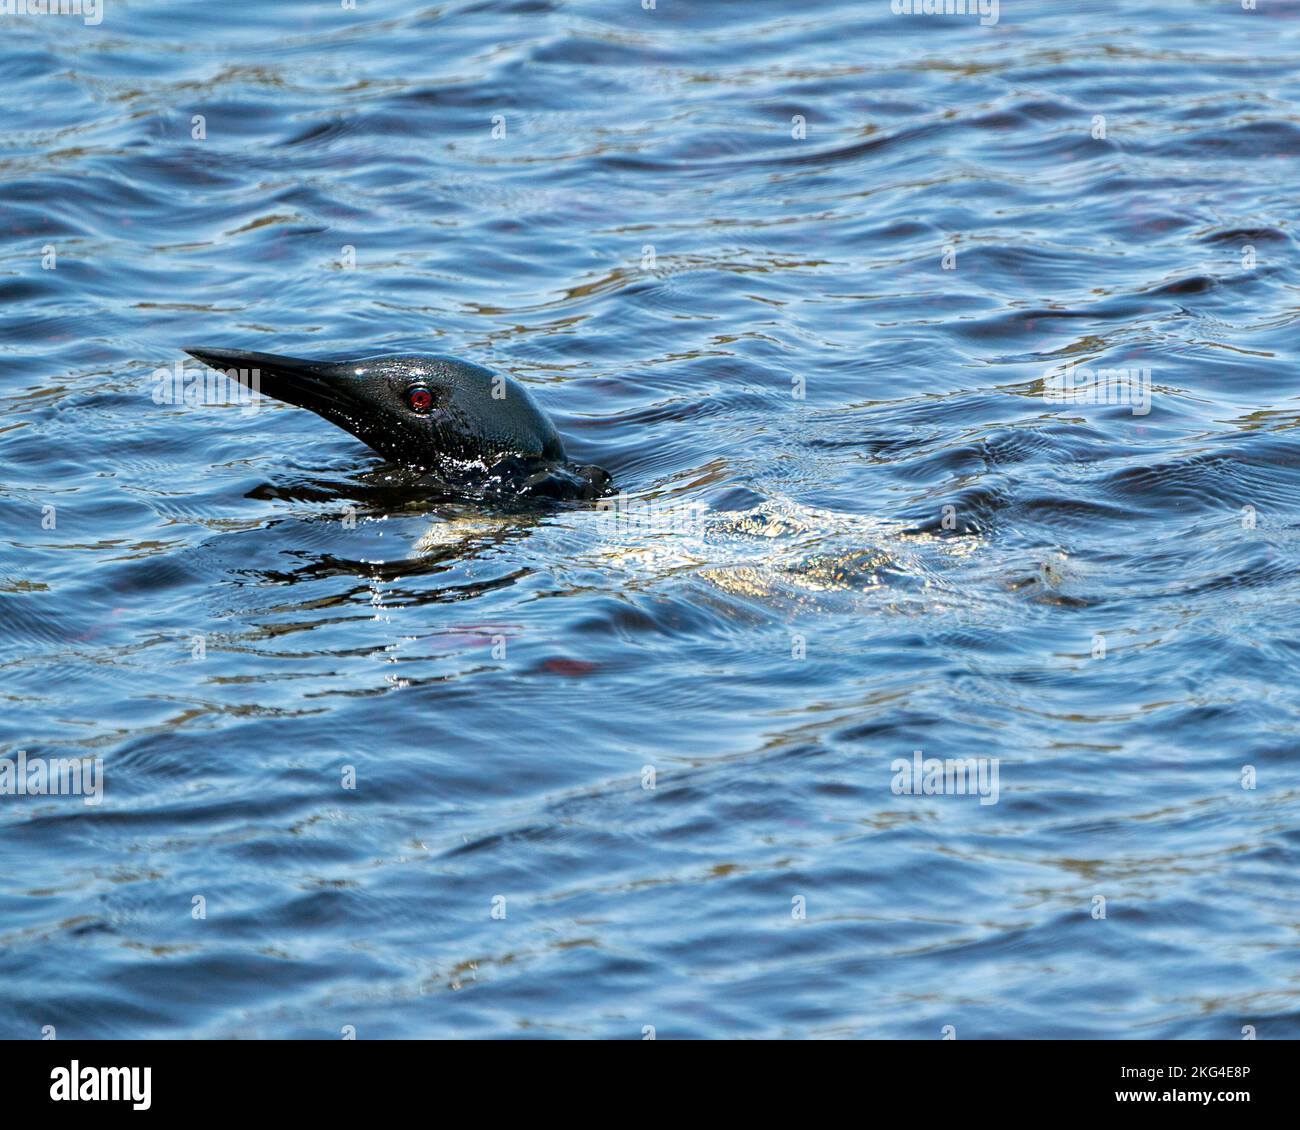 Loon comune testa fuori dall'acqua nel lago nel suo ambiente e habitat, mostrando occhi rossi. Loon in Wetland Image. Lago Loon on. Scorta fotografica Loon. Foto Stock